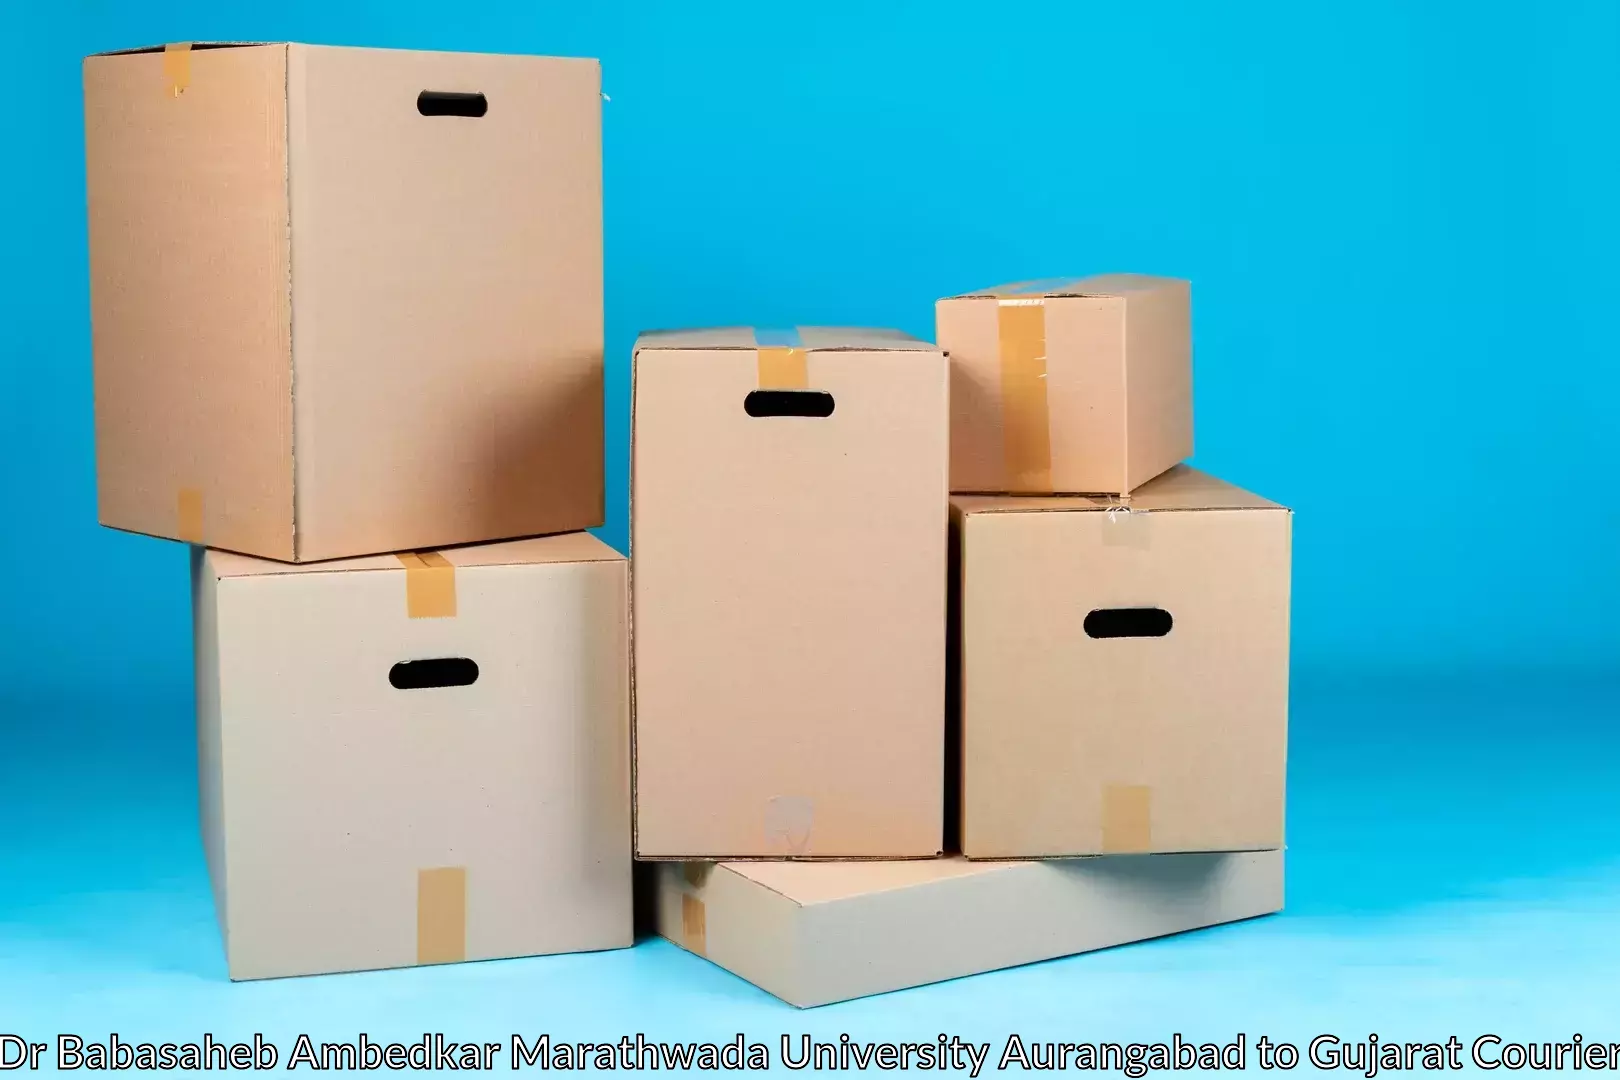 Furniture movers and packers Dr Babasaheb Ambedkar Marathwada University Aurangabad to Limkheda